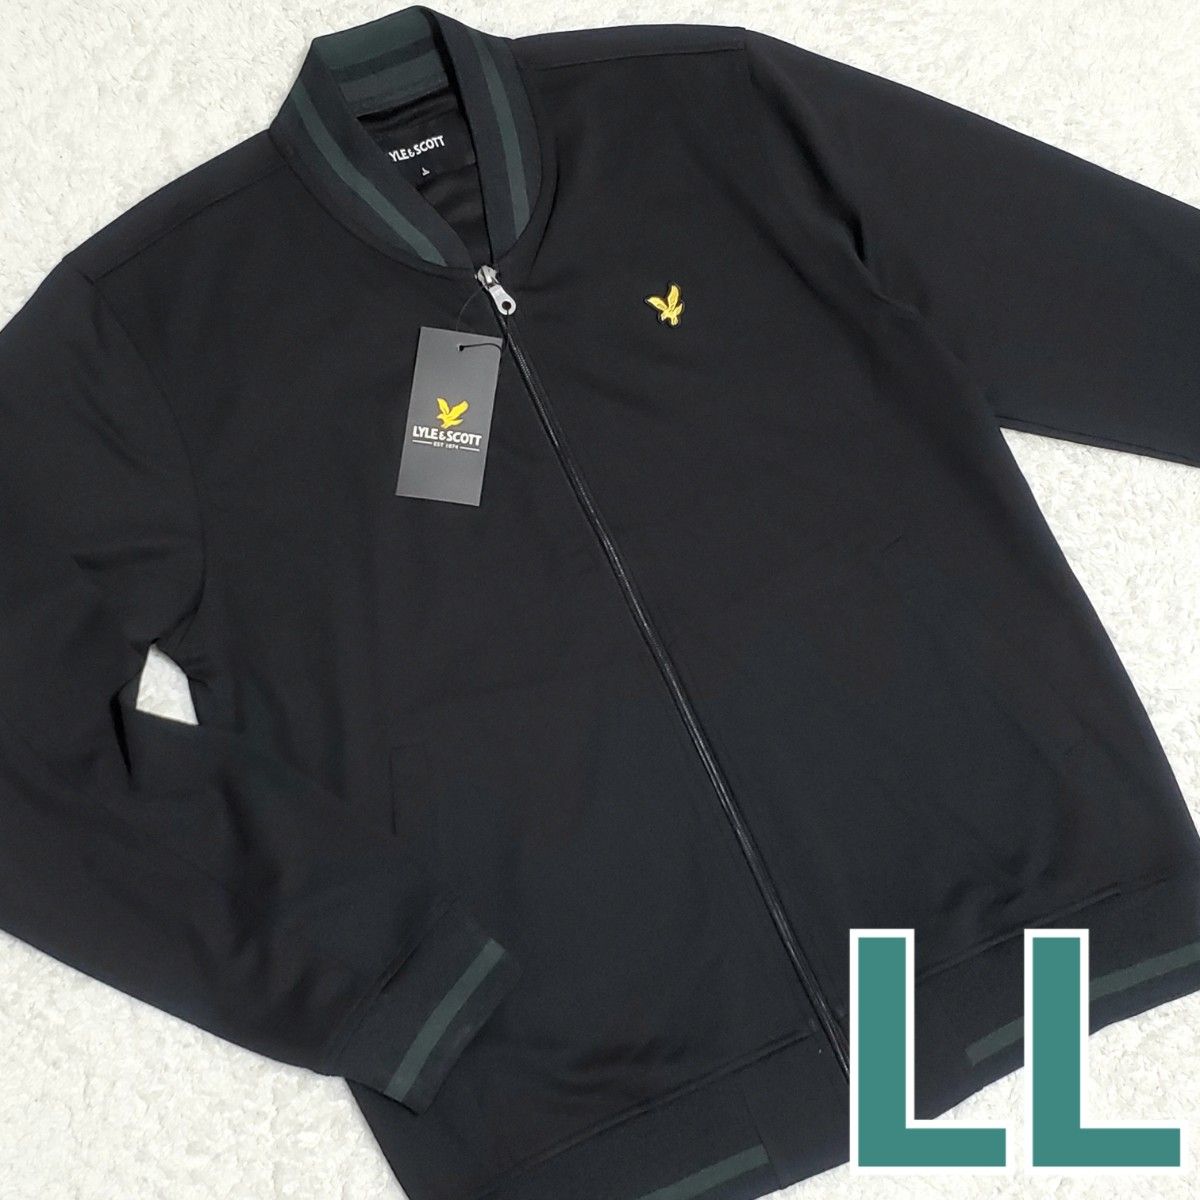 LYLE&SCOTT ライルアンドスコット フルジップジャケット 新品 メンズ 紳士 LLサイズ 2L XL 黒ブラック 長袖刺繍